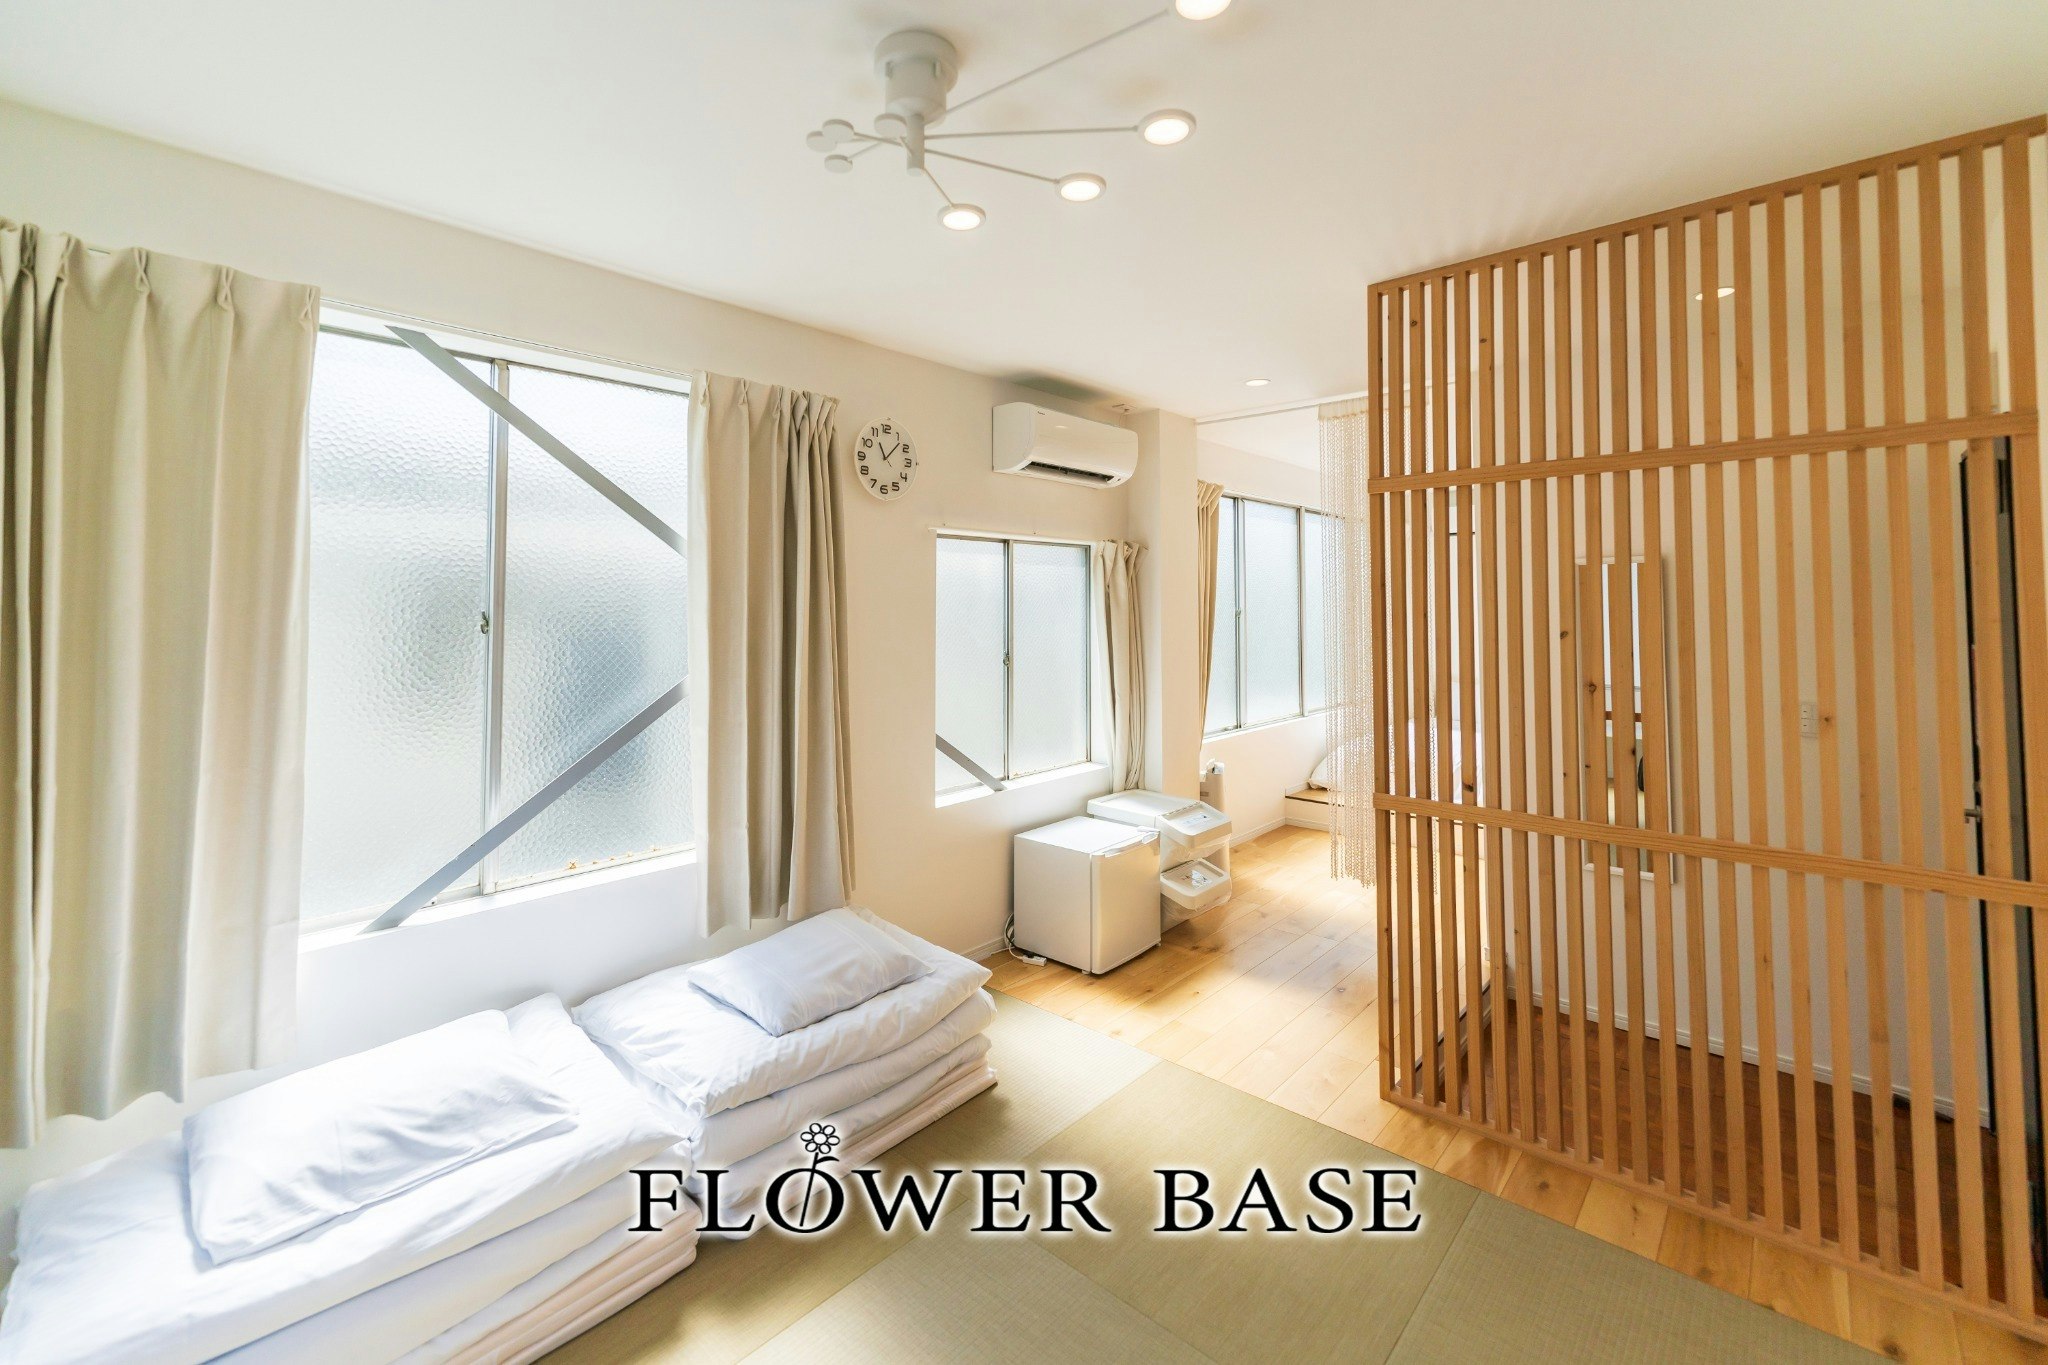 【2連泊 30%OFF SALE】Flower Base Lily white 福岡ドームが目の前!